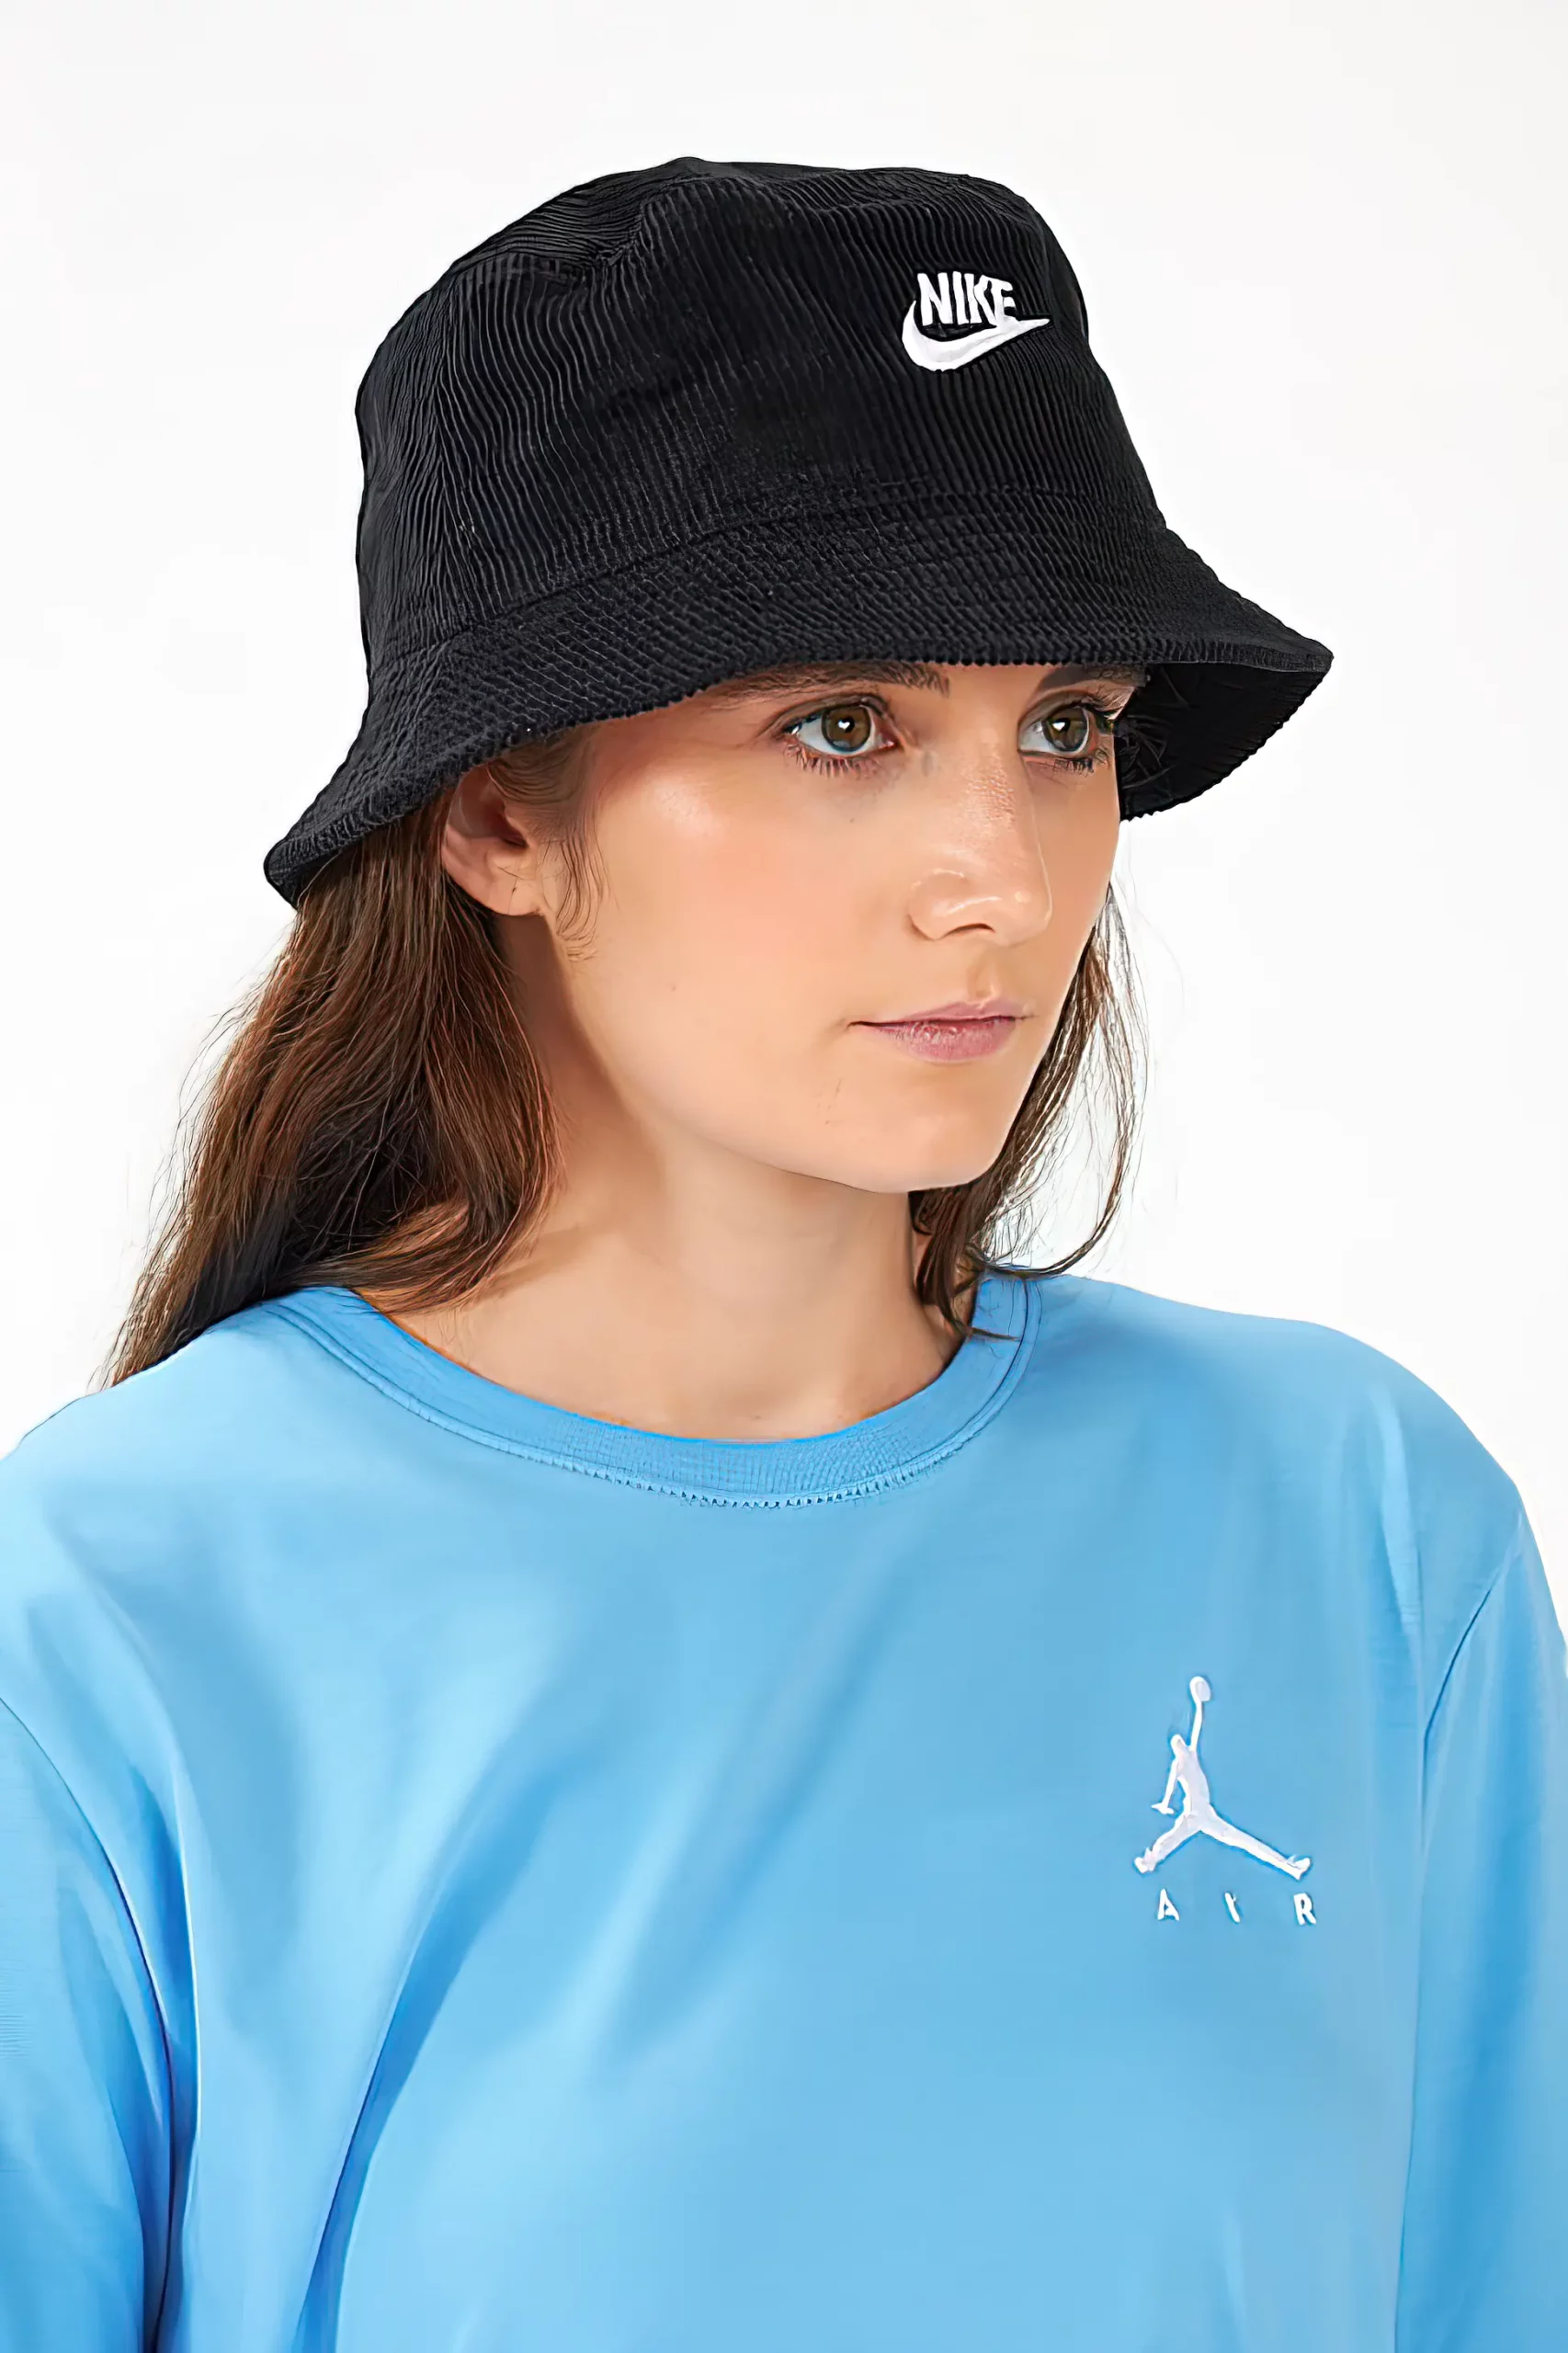 Woman wearing a black sports bucket hat